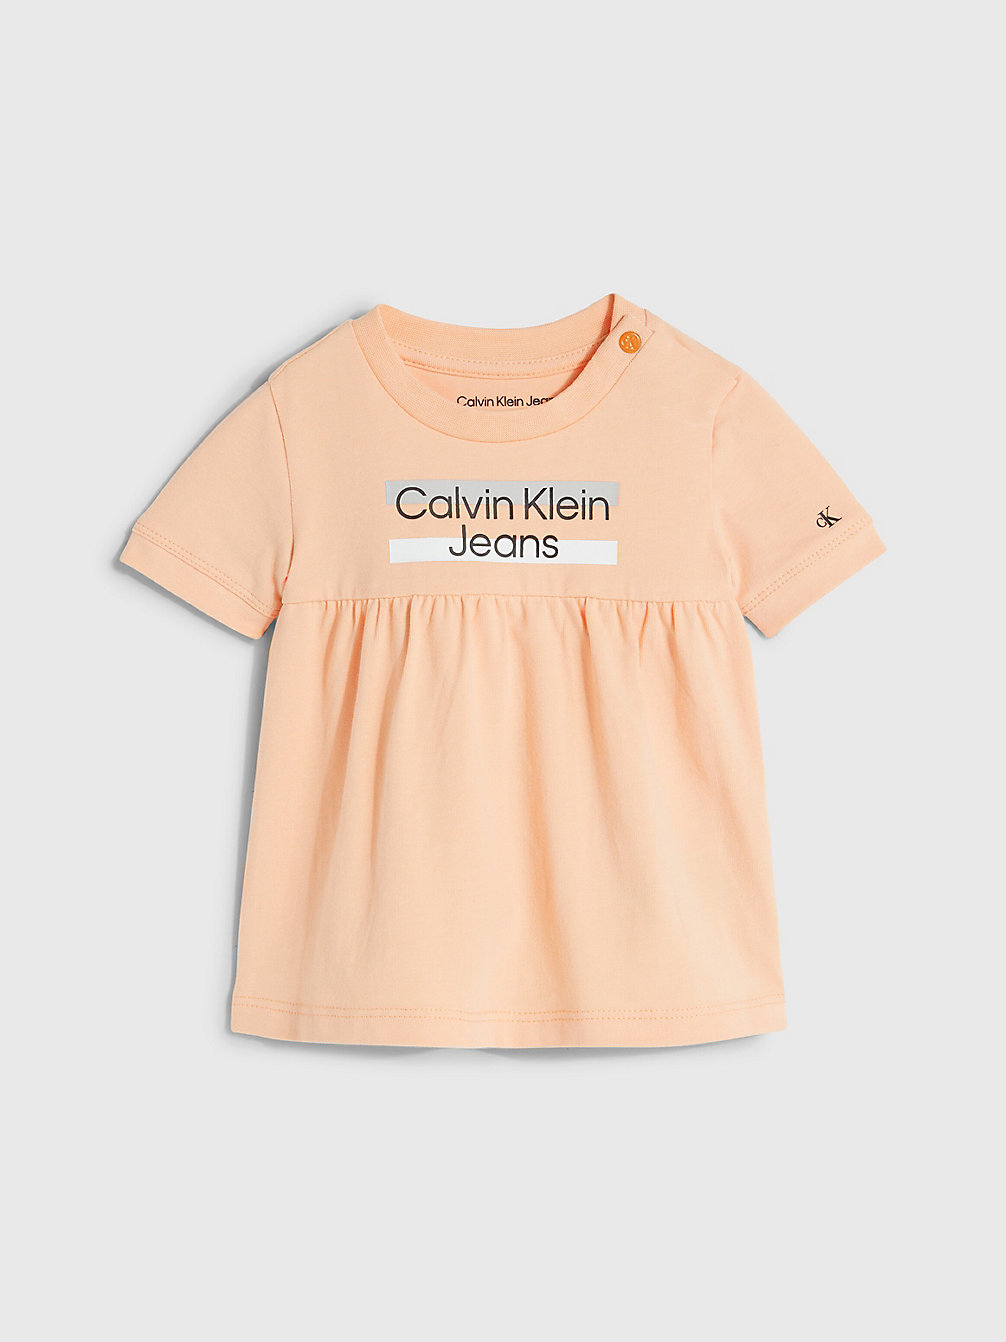 FRESH CANTALOUPE Baby-Kleid Mit Logo undefined undefined Calvin Klein